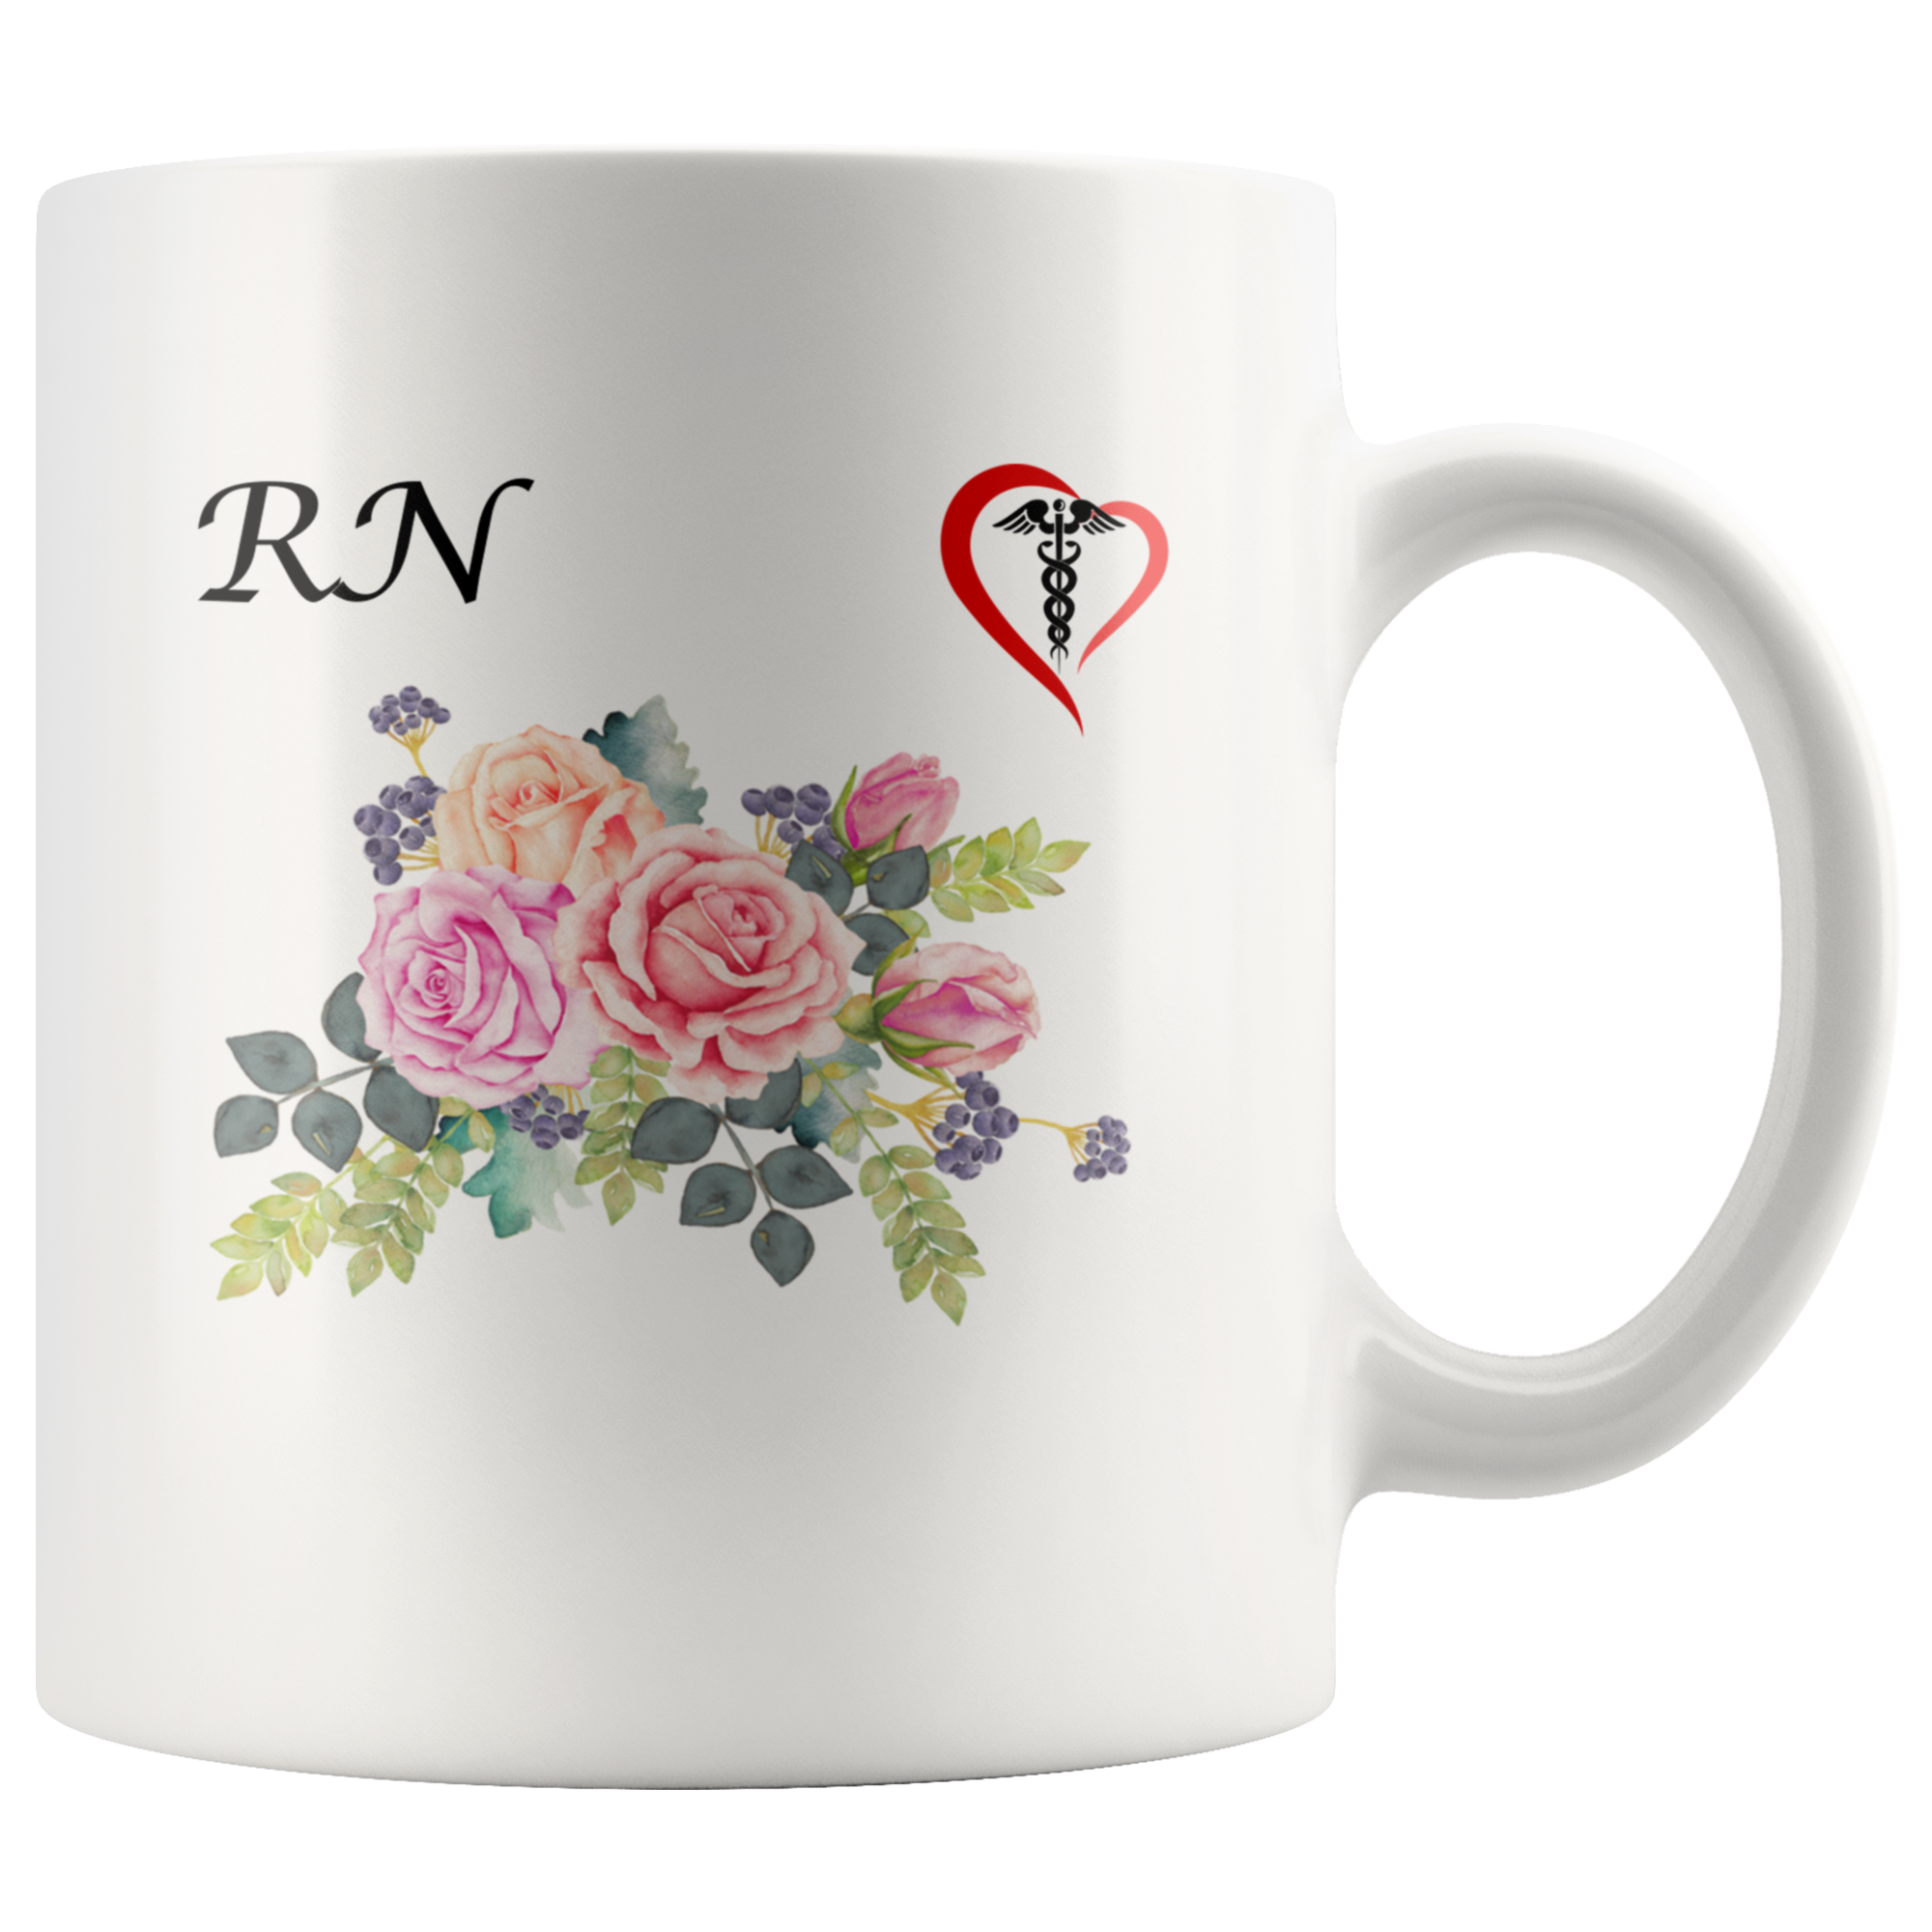 Floral RN Mug